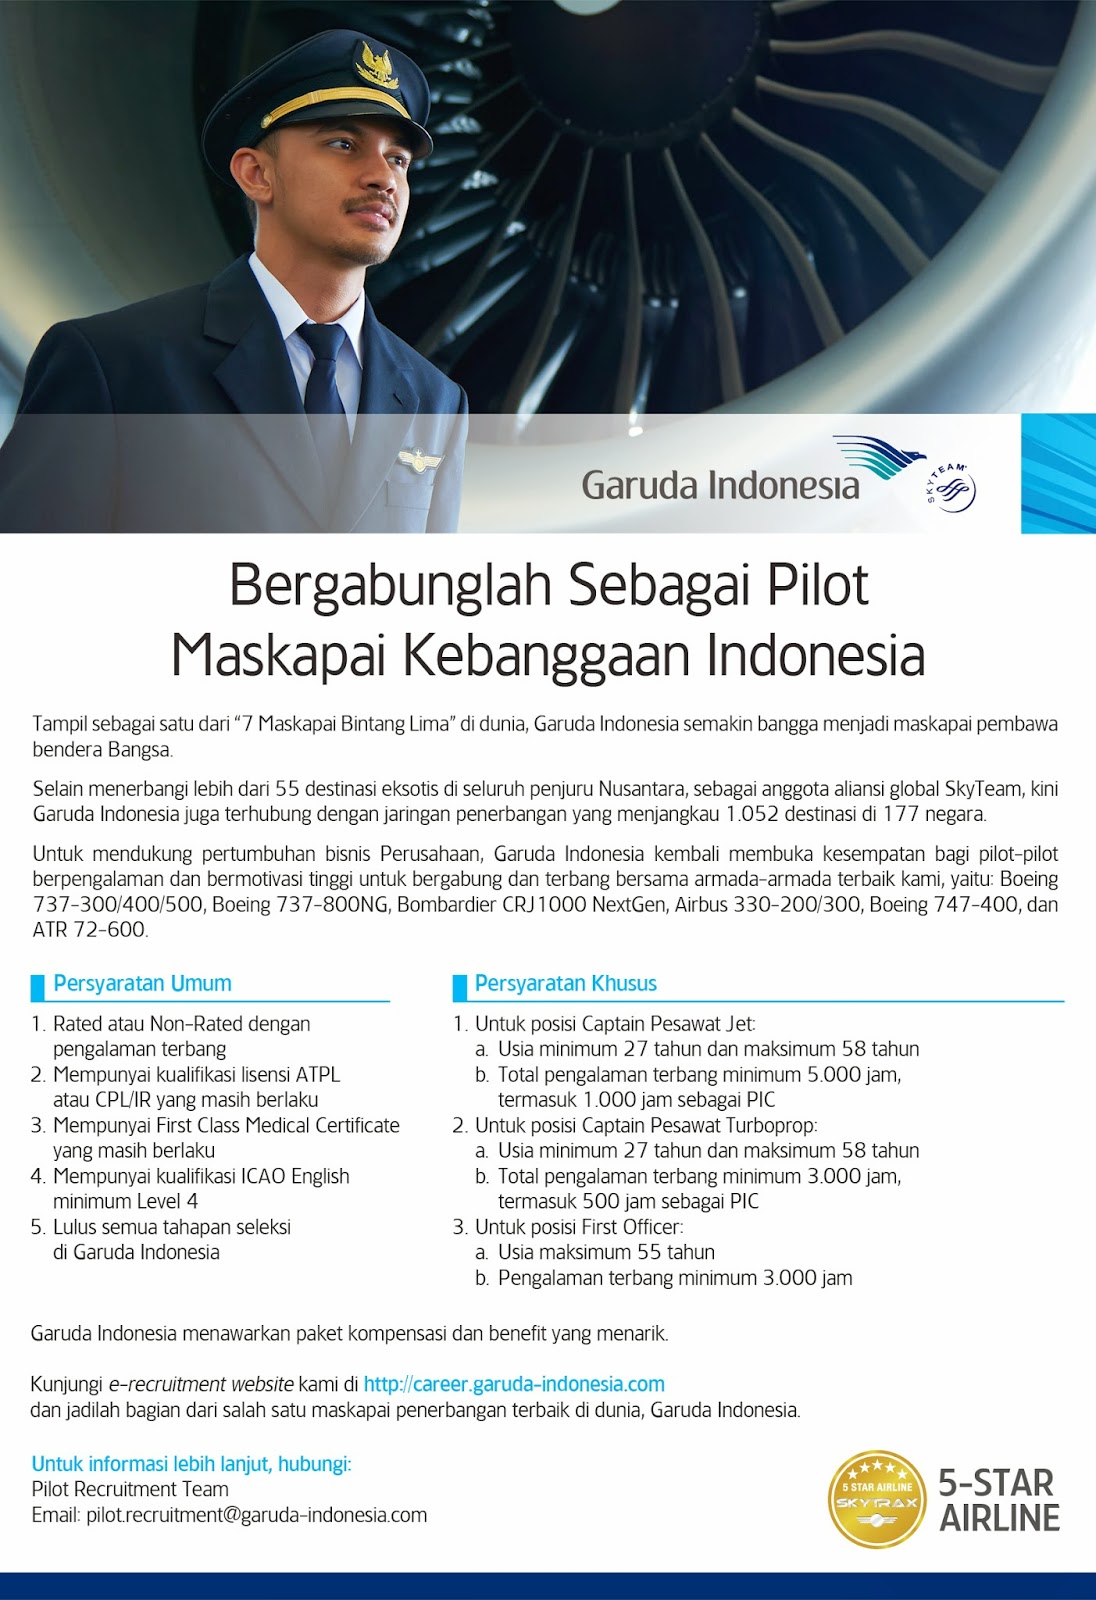 Lowongan Kerja Pilot Garuda Indonesia Terbaru 2015 